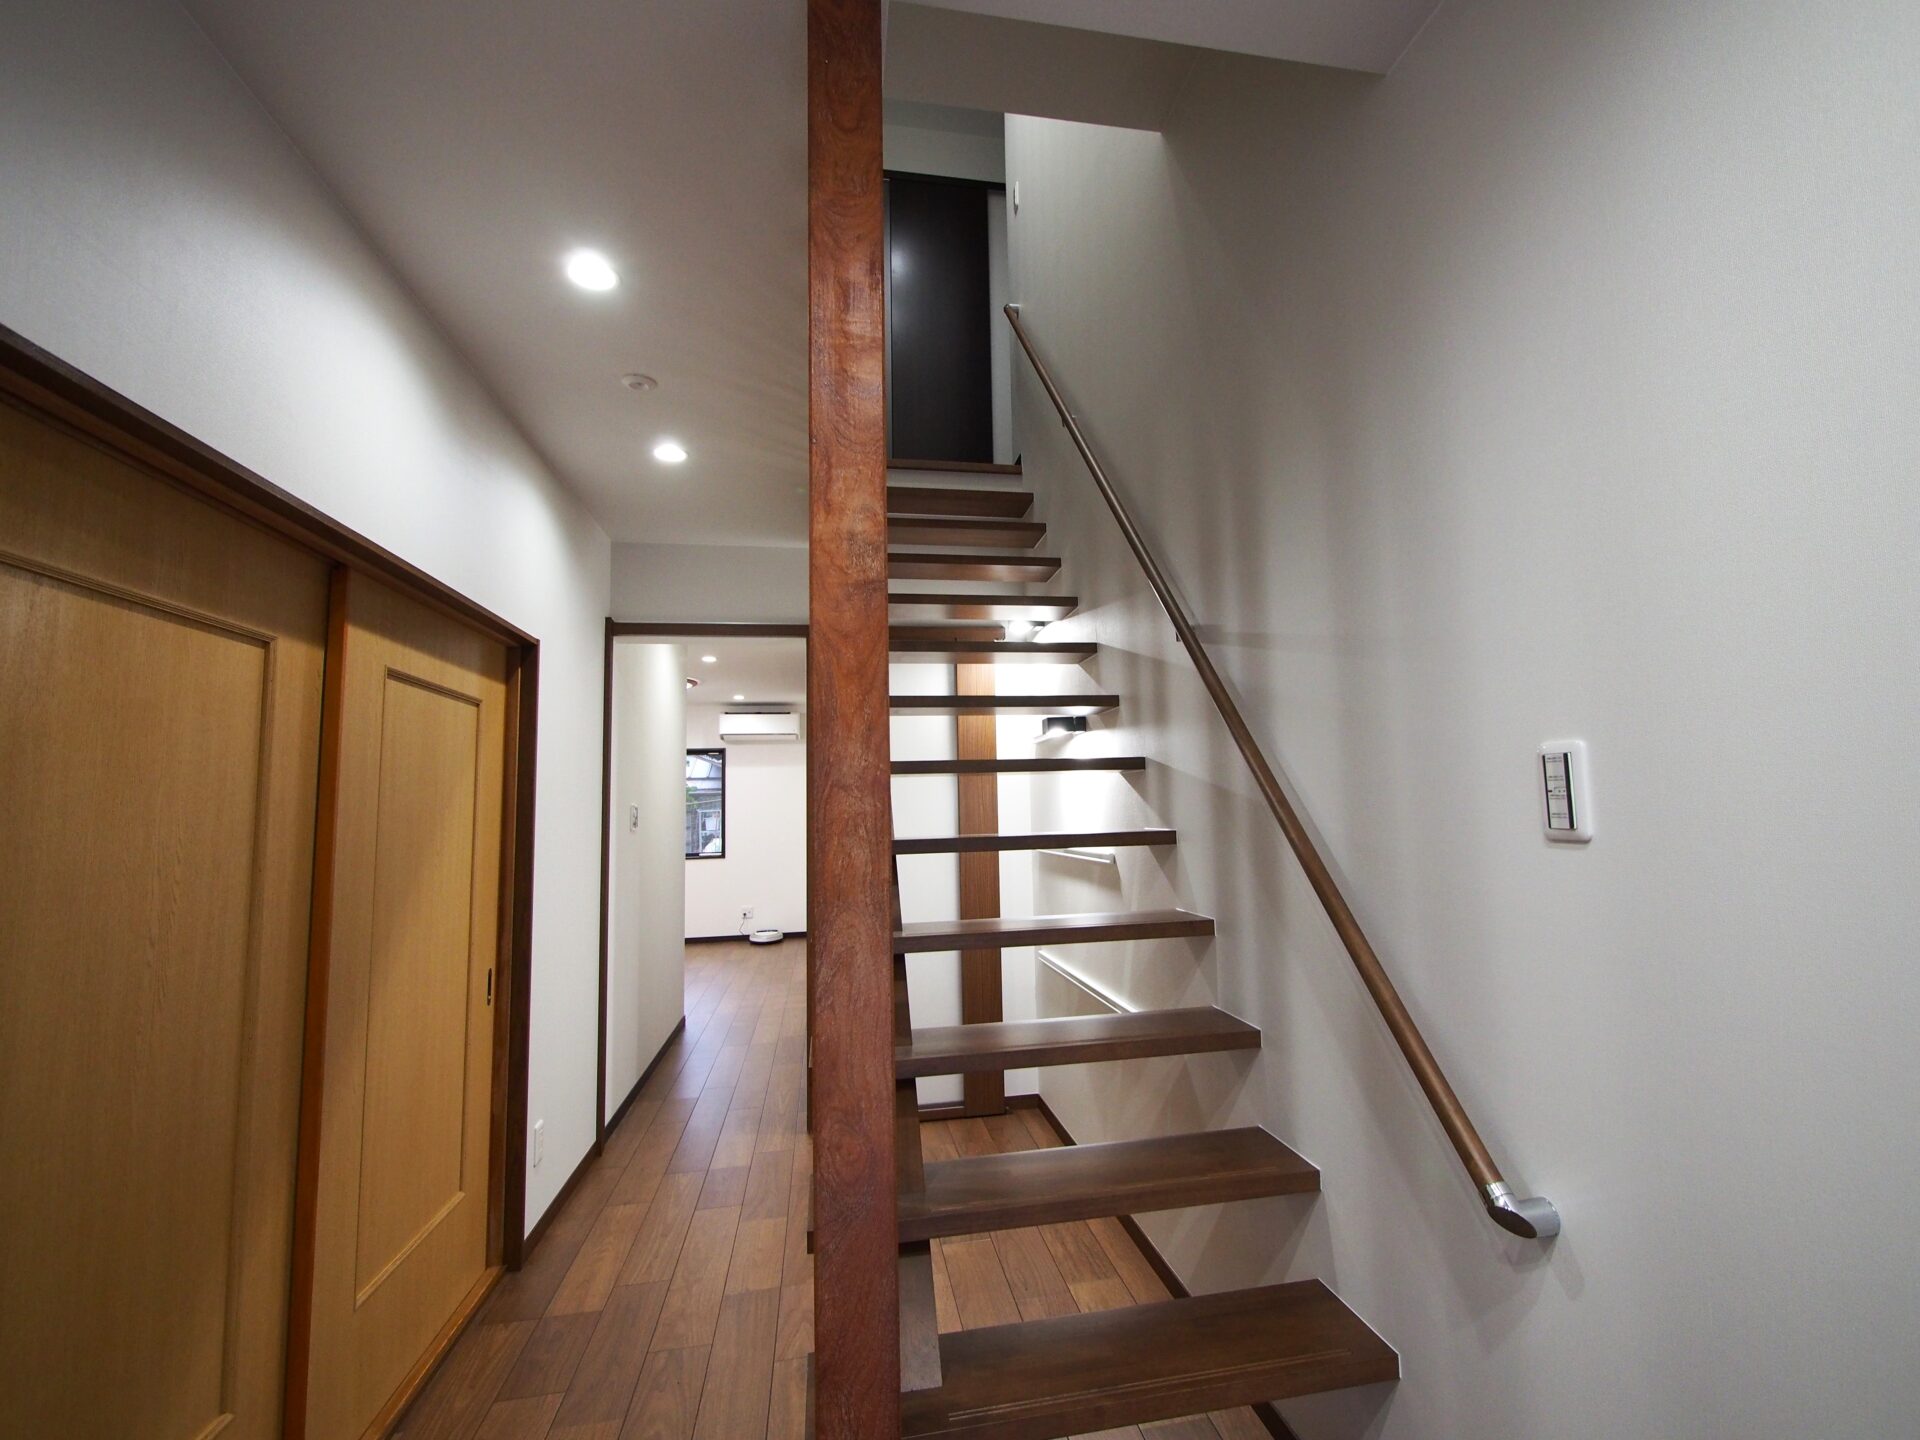 50代夫婦のための明るく開放的な空間 スケルトン階段がおしゃれな住宅リフォーム